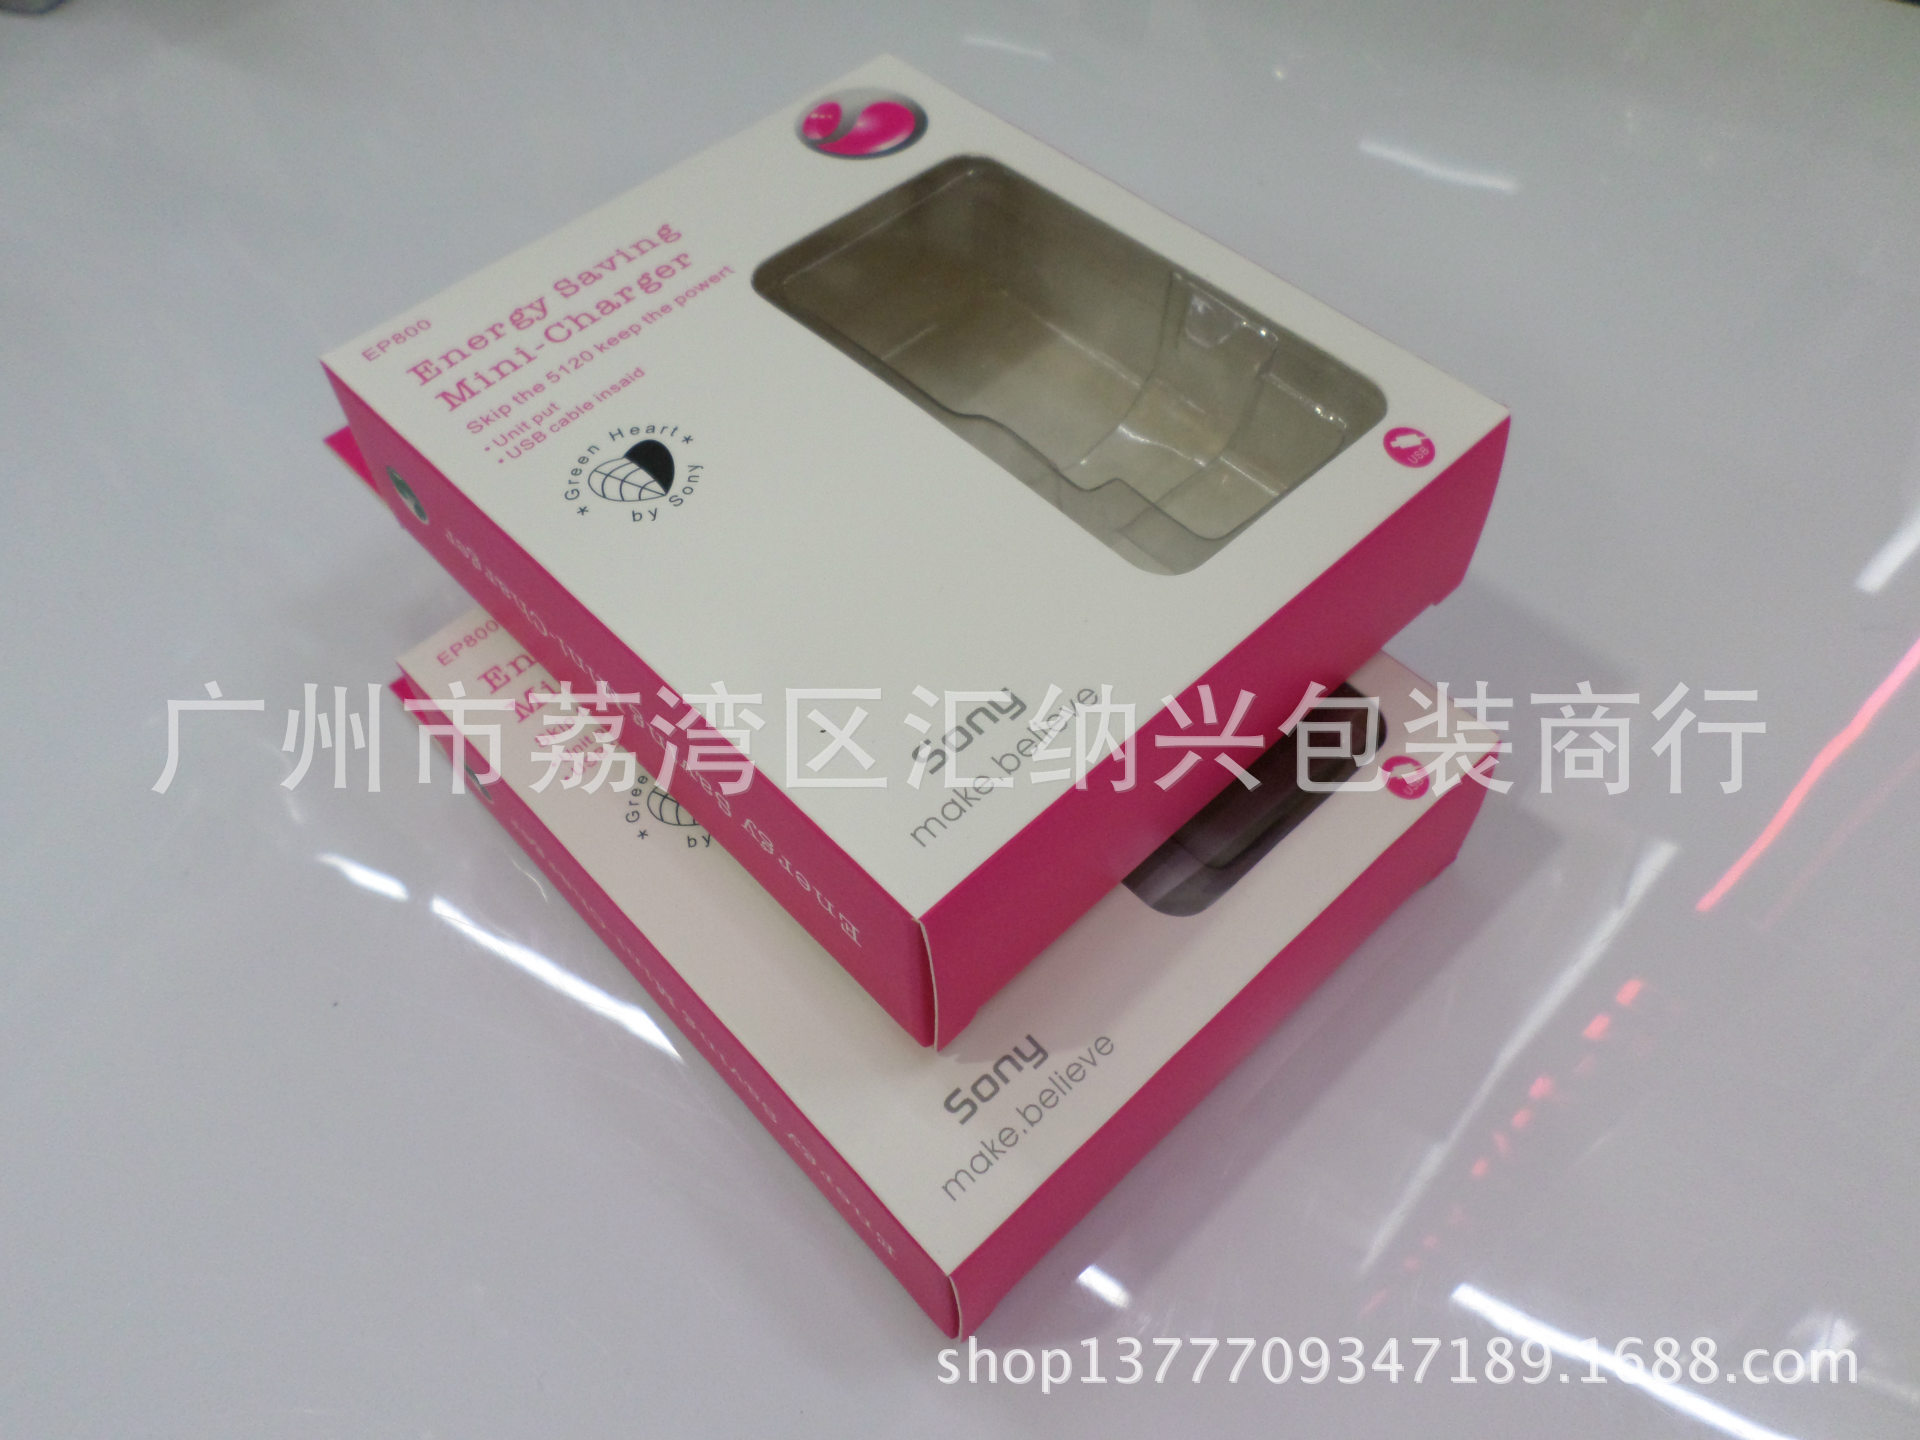 纸盒-Sony USB数据线粉红色包装盒 大量现货